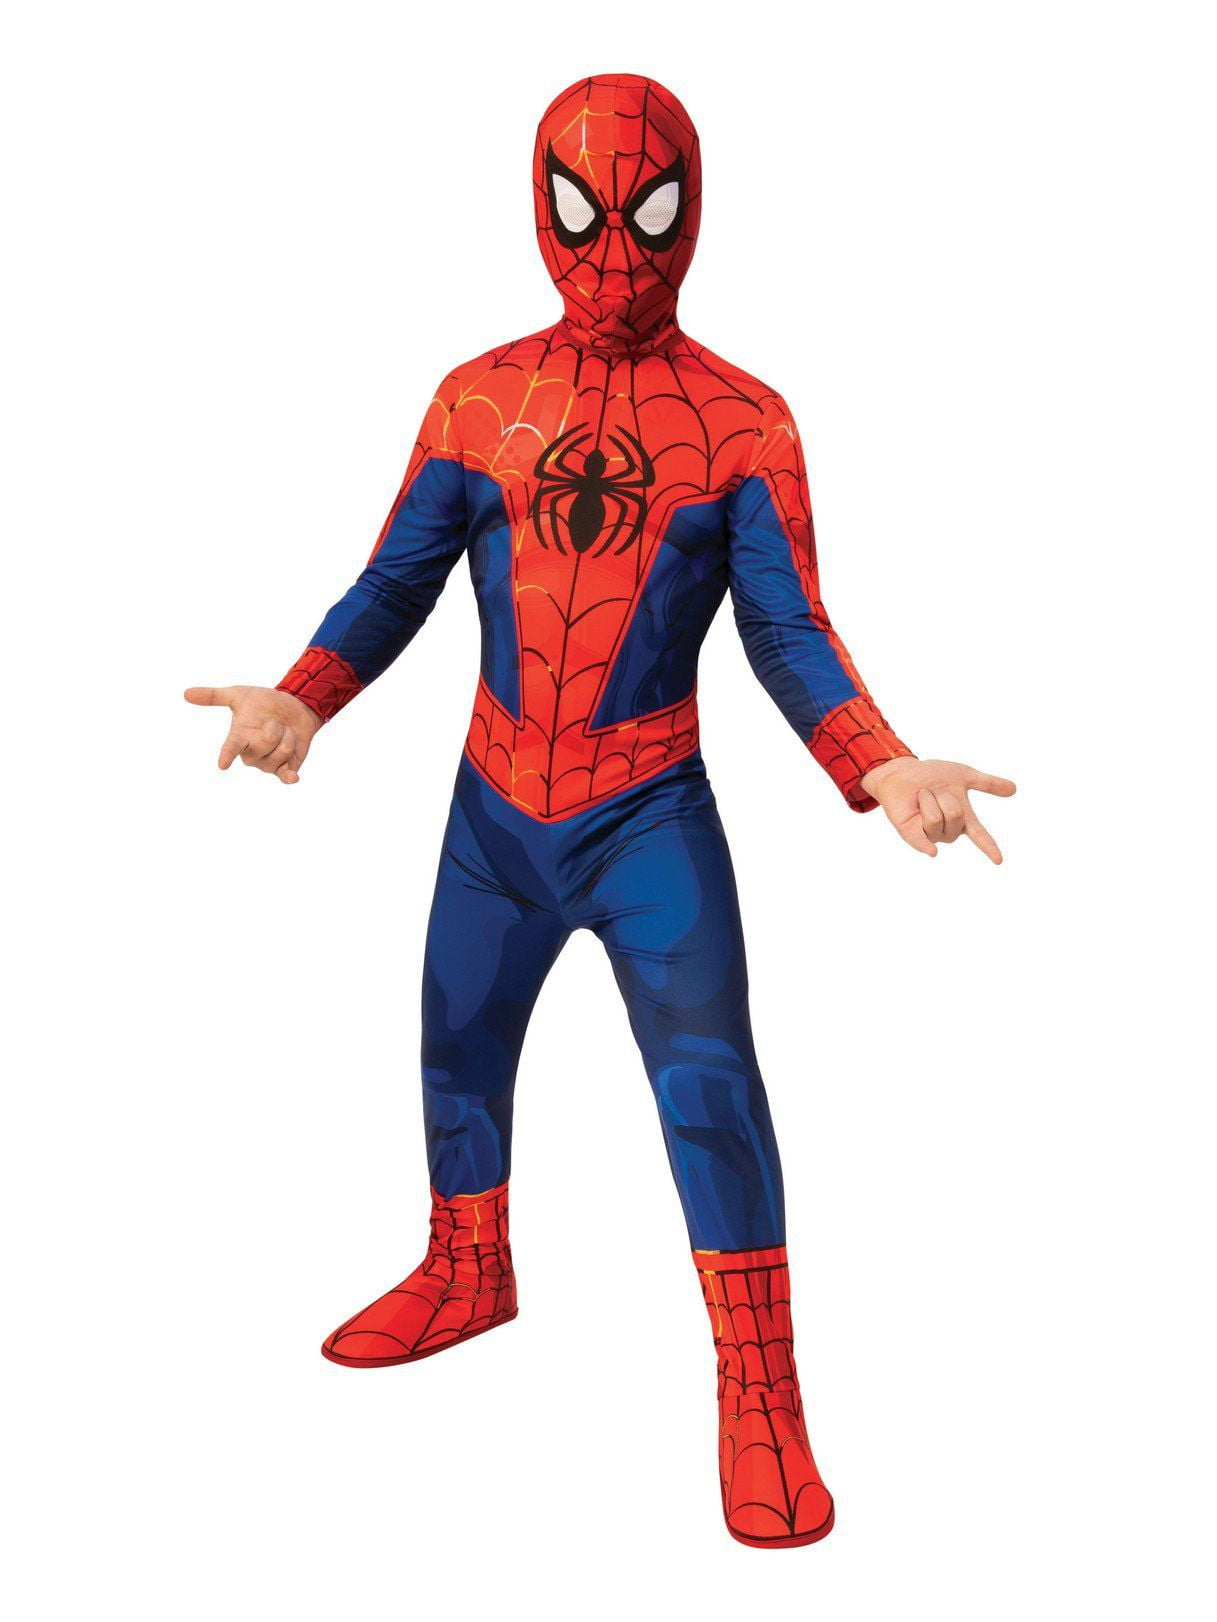 Costume Disney Marvel Spider-Man Peter Parker, enfants